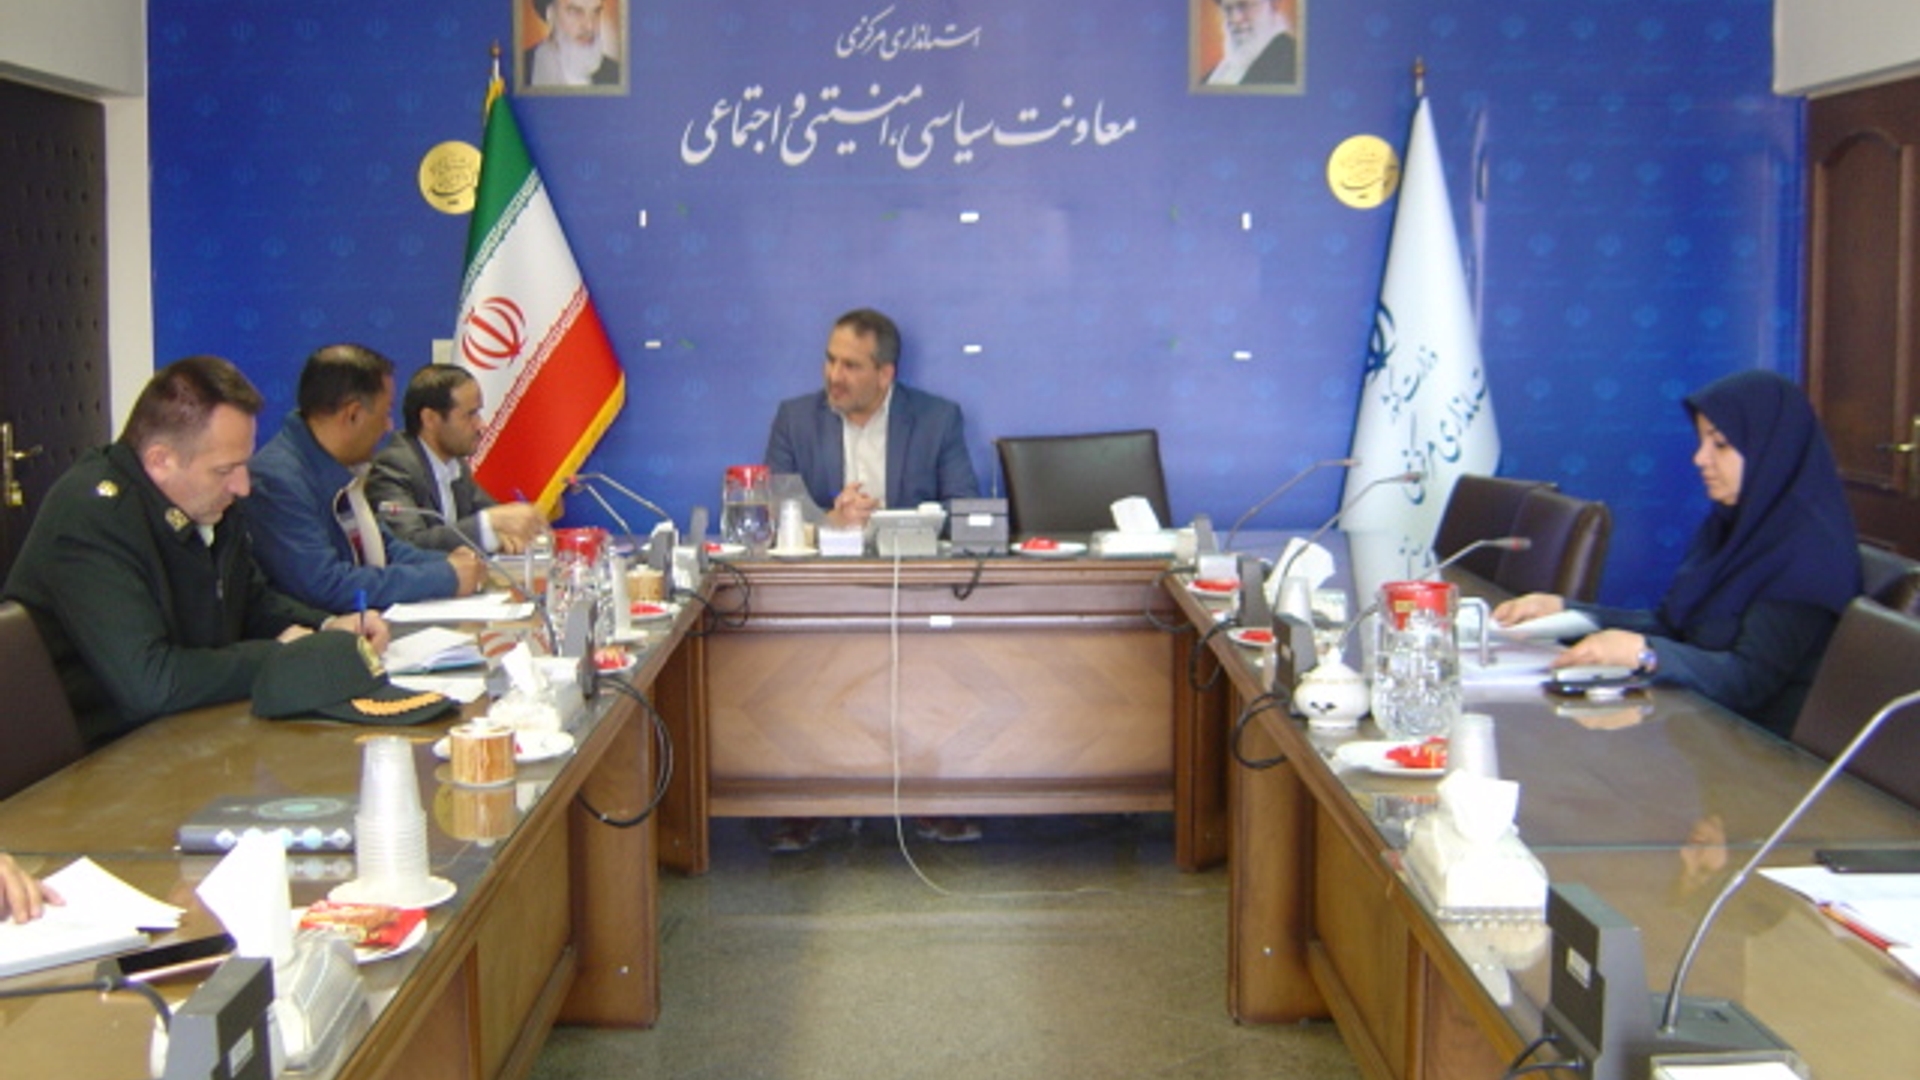 جلسه کمیته نظارت بر فرآیند تهیه، تولید و توزیع مواد شیمیایی و زیستی خطرناک در ساعت 30-10 مورخ 11-12-1401 به ریاست آقای رحیمی تبار مدیر کل امنیتی و انتظامی برگزار گردید.